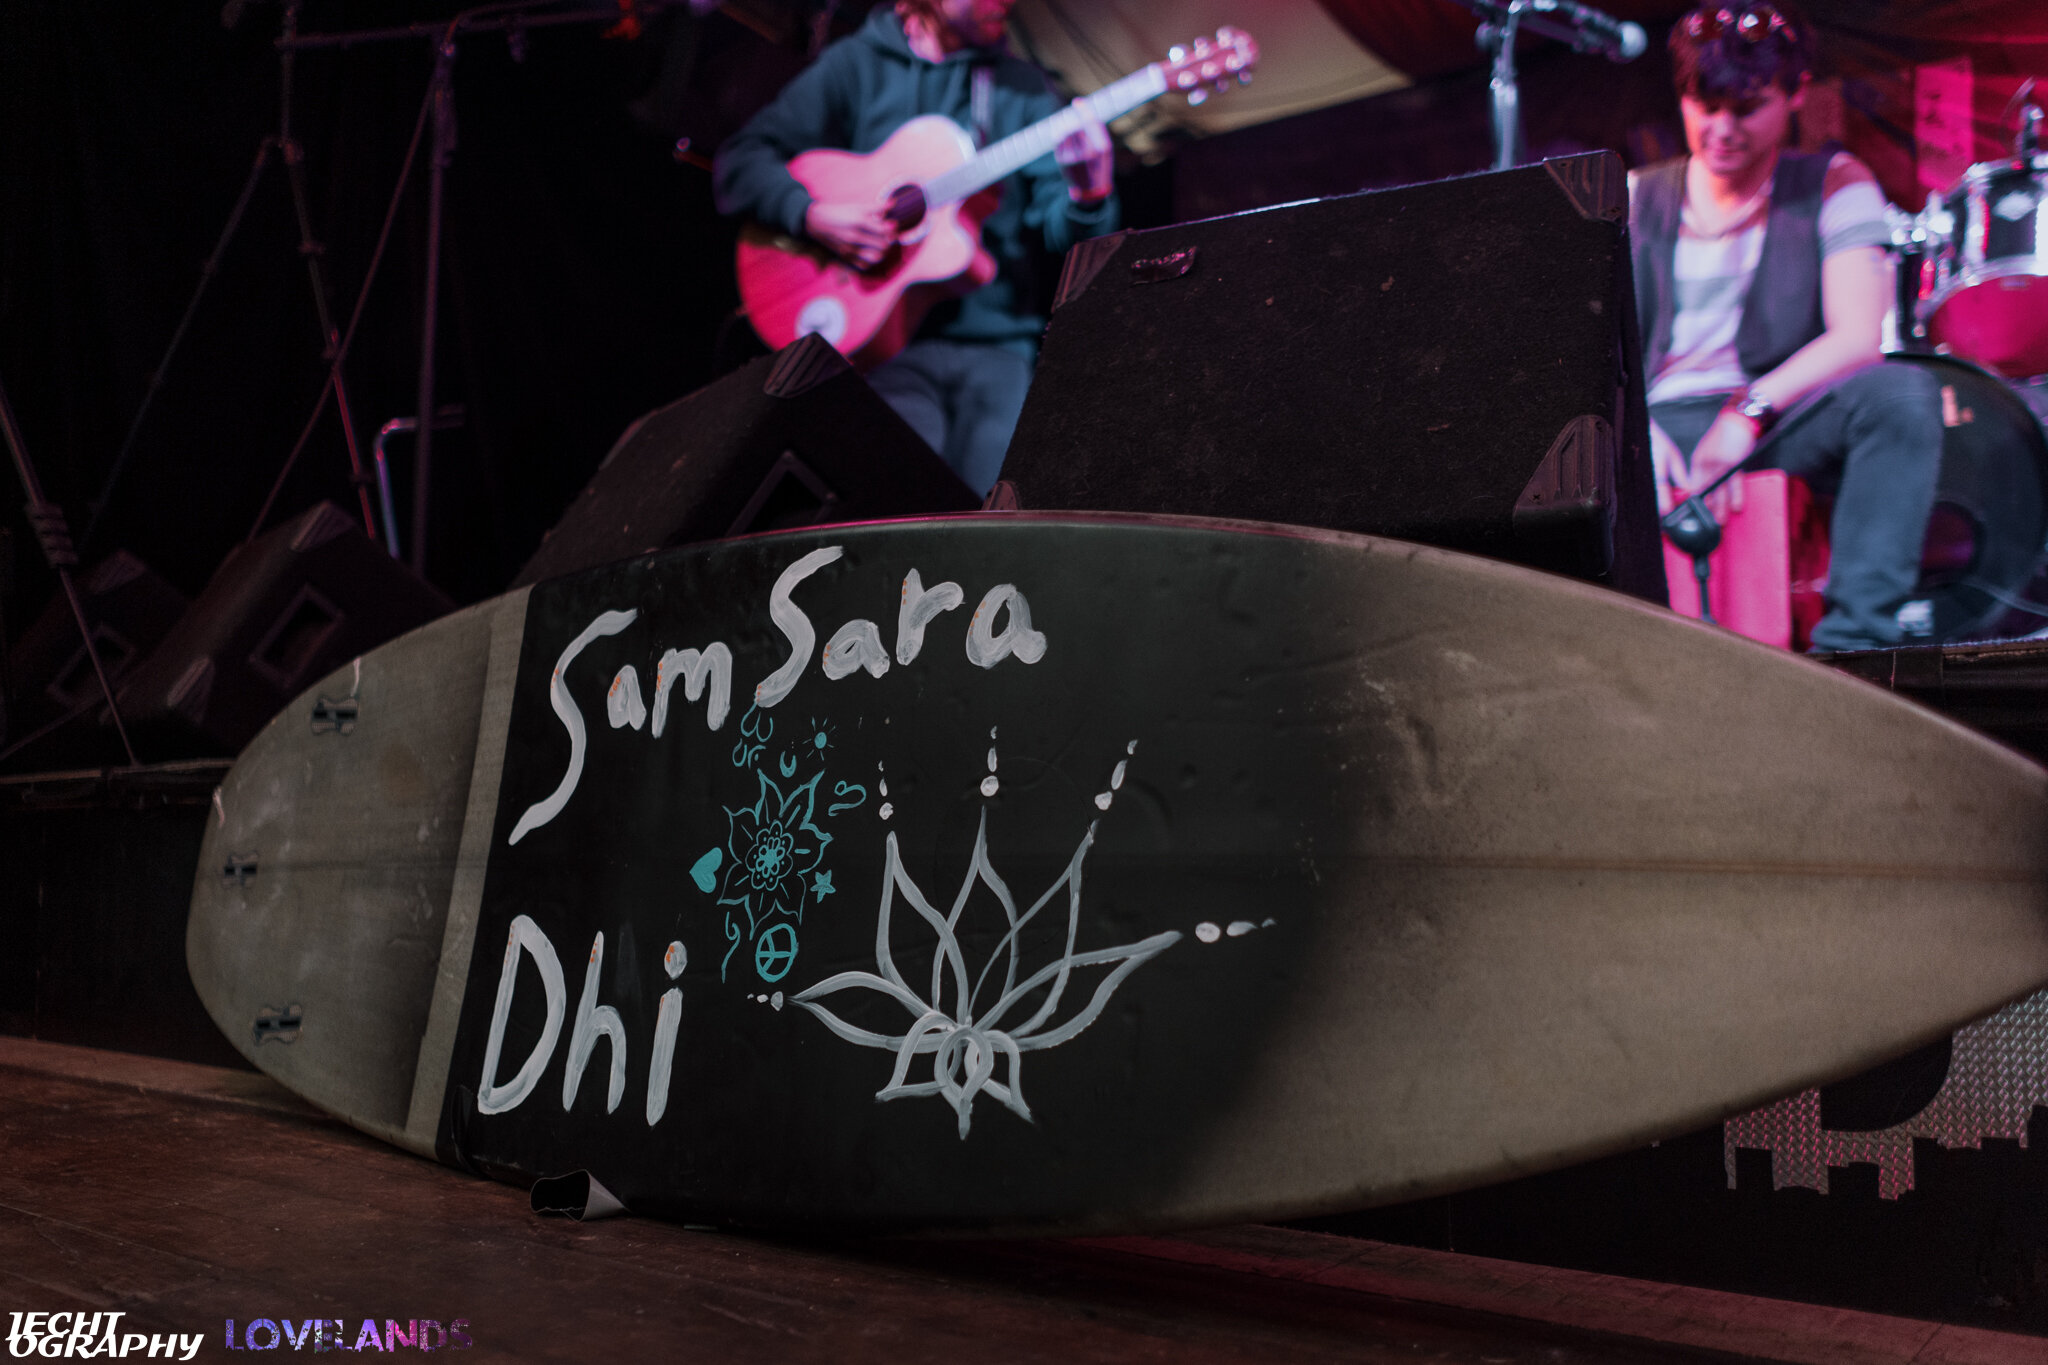 Sam Sara Dhi-1.jpg